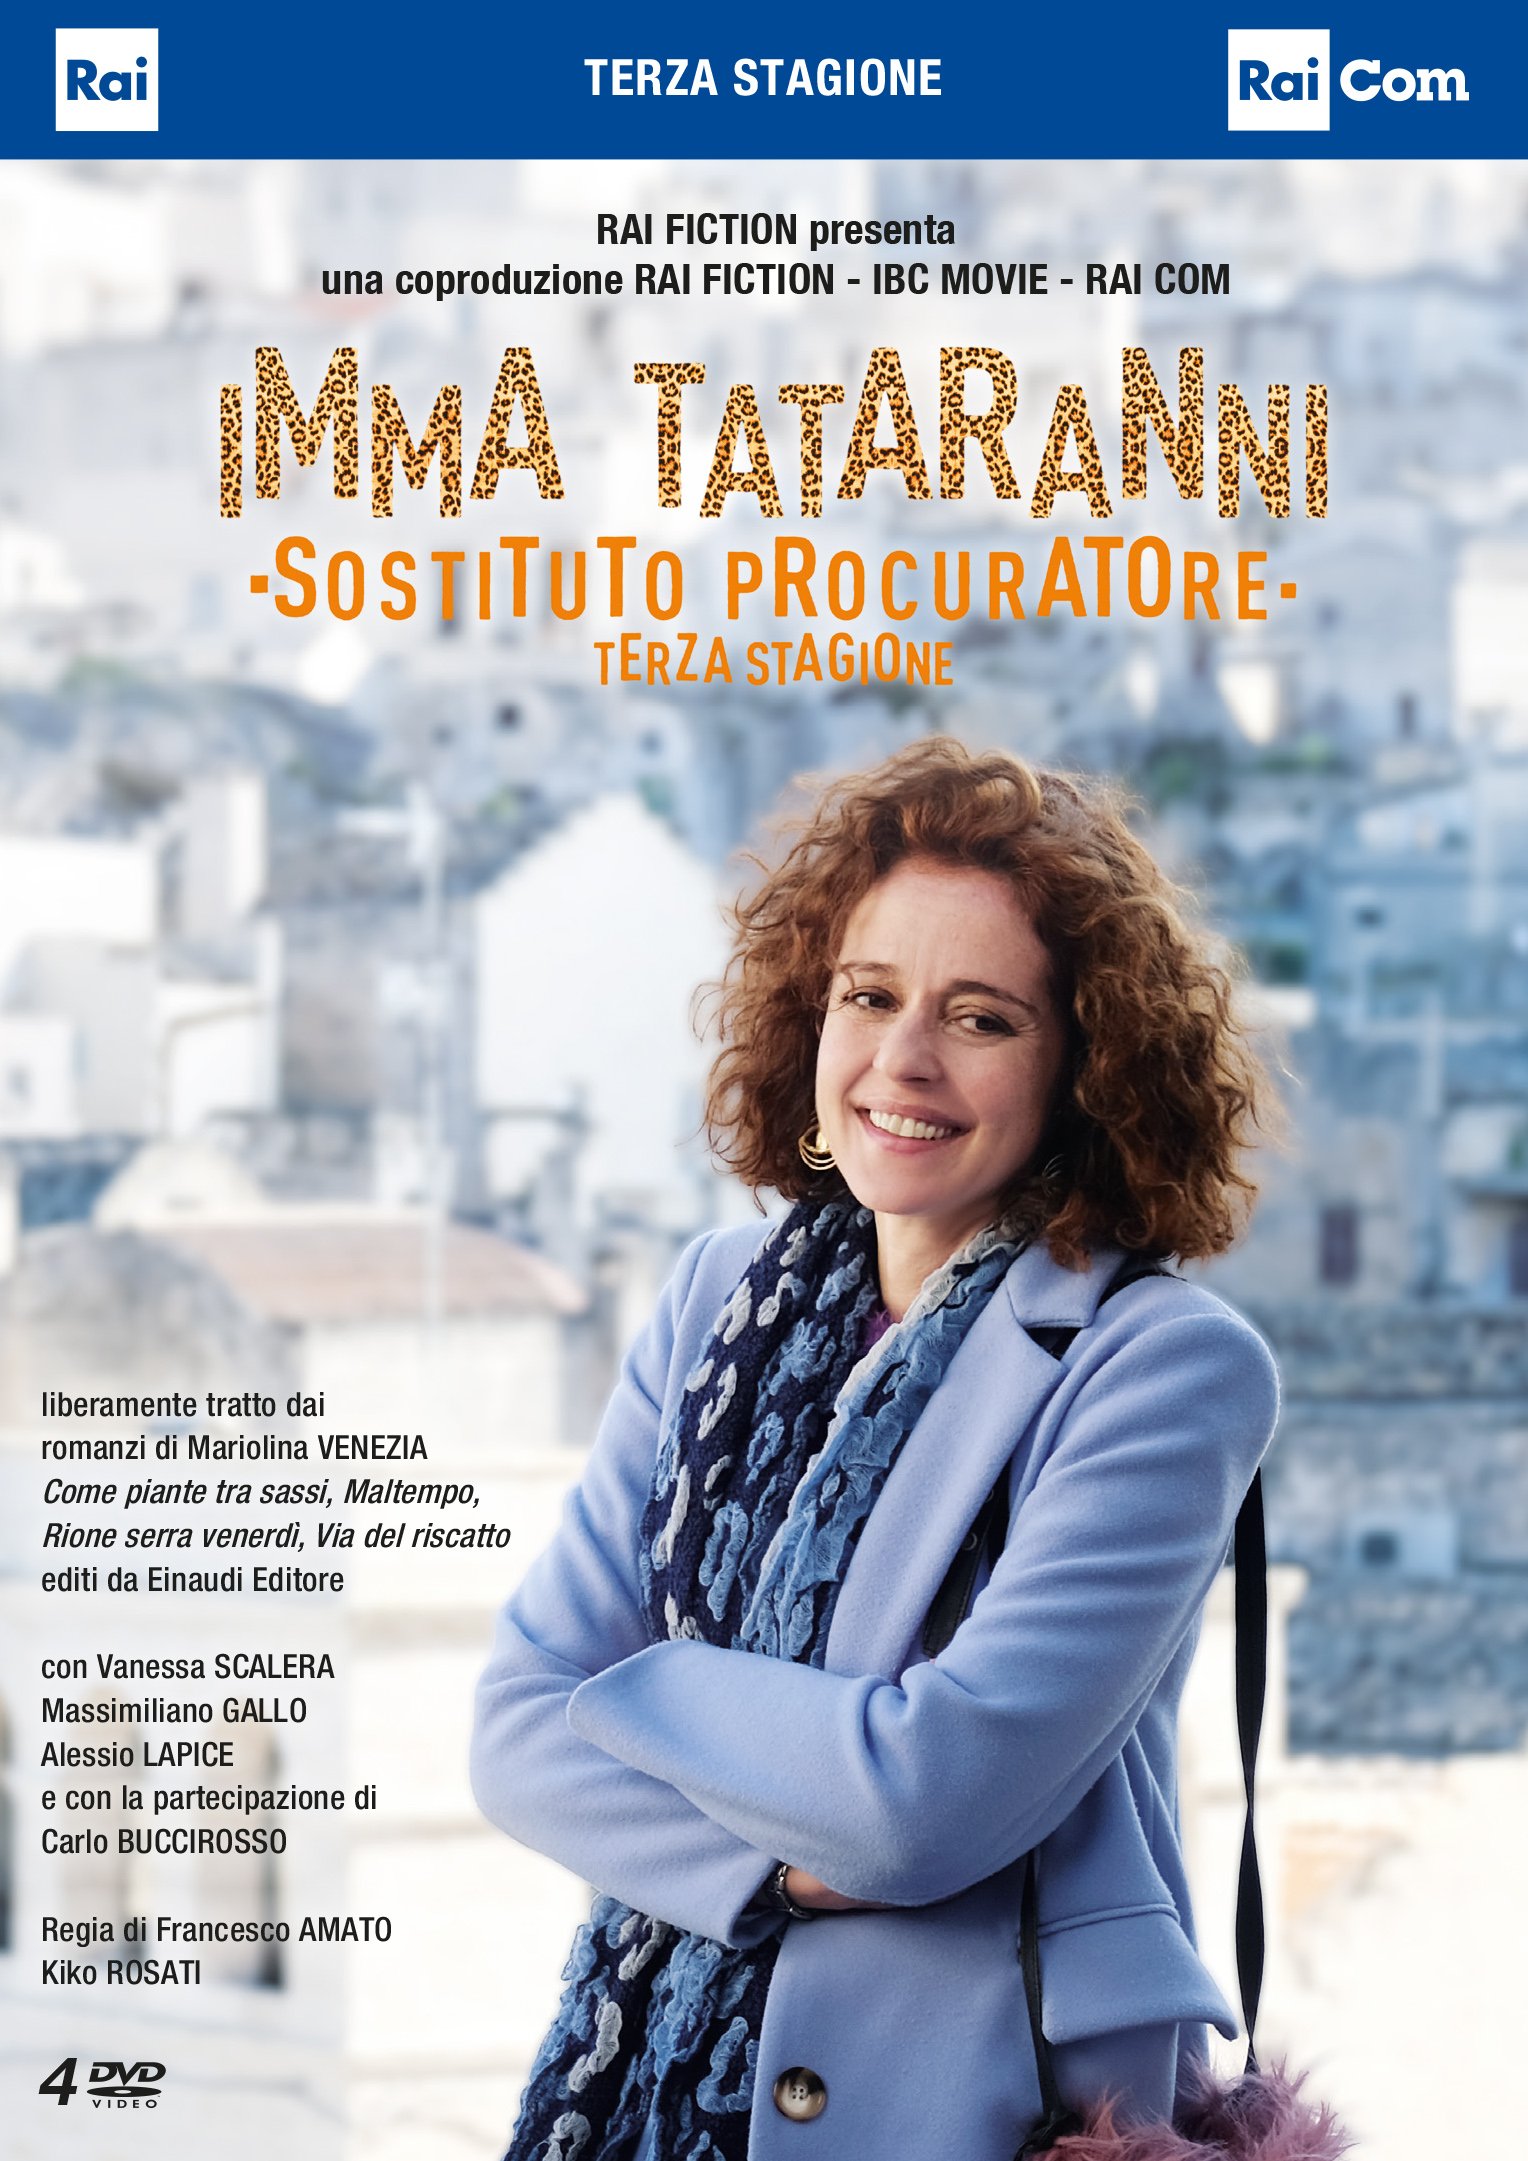 Betti Pedrazzi nella nuova stagione della serie Imma Tataranni sostituto procuratore